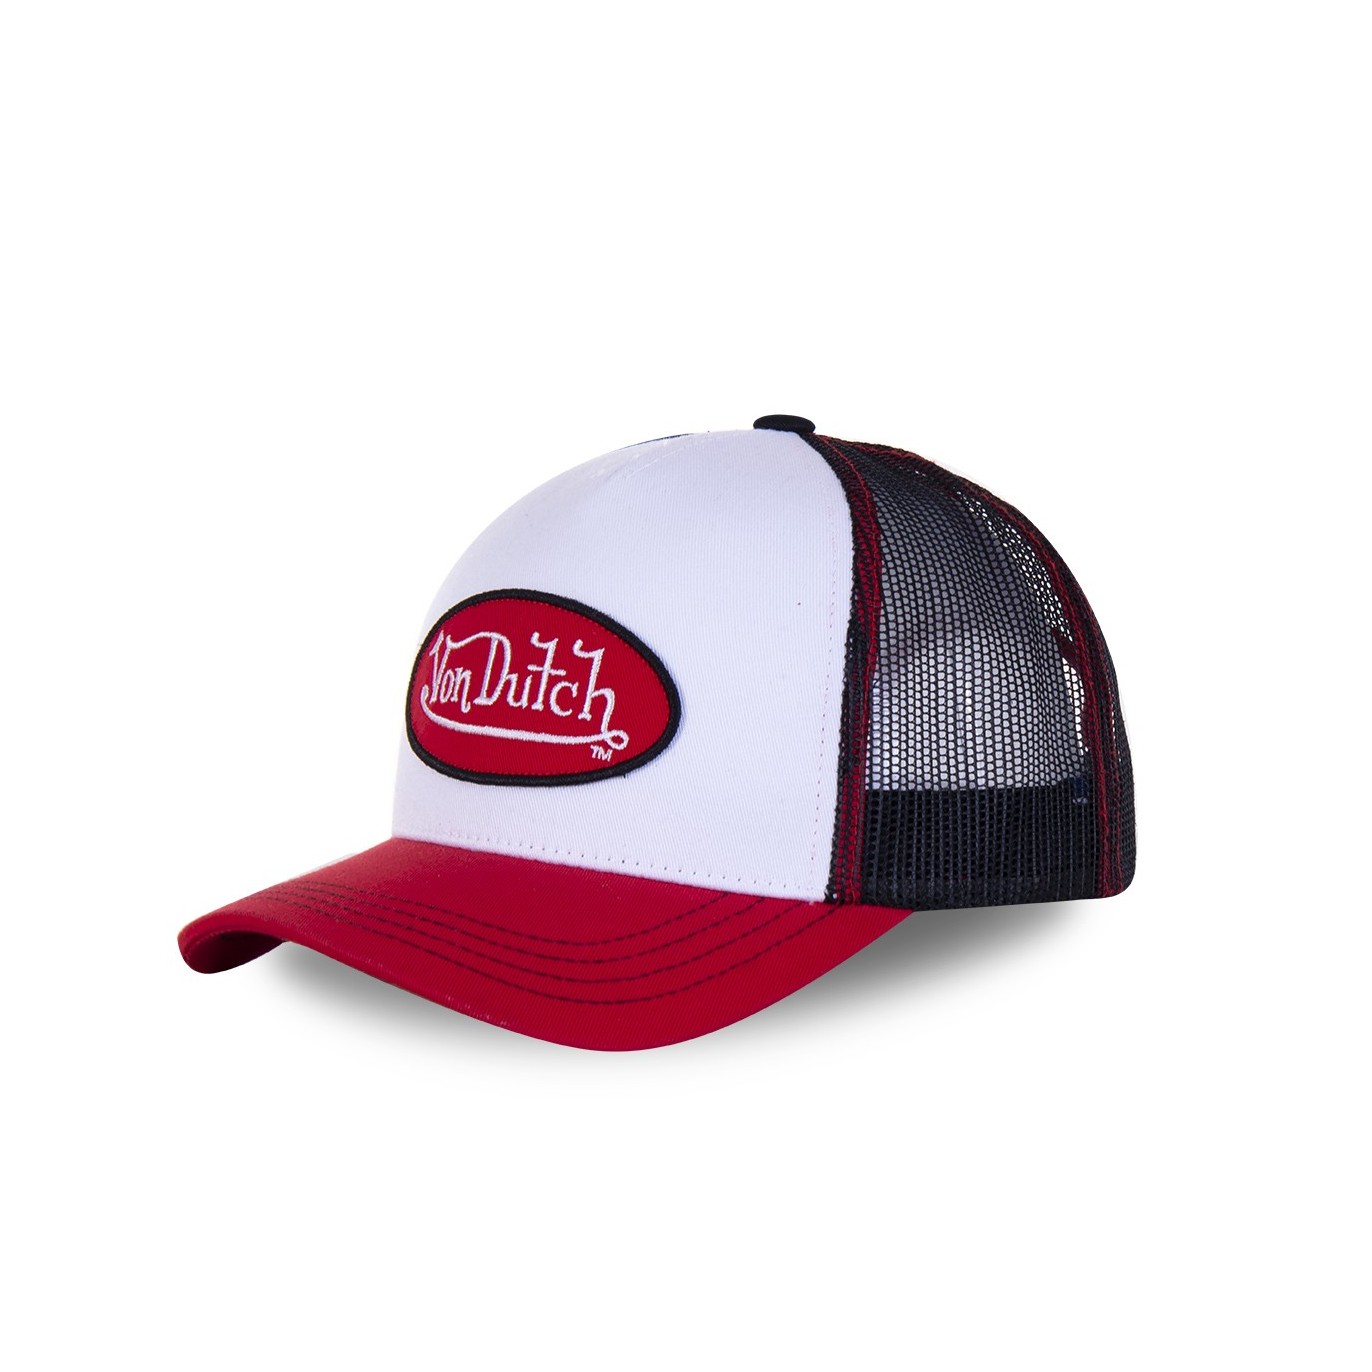 Men's Von Dutch white and red Col baseball cap - Von Dutch